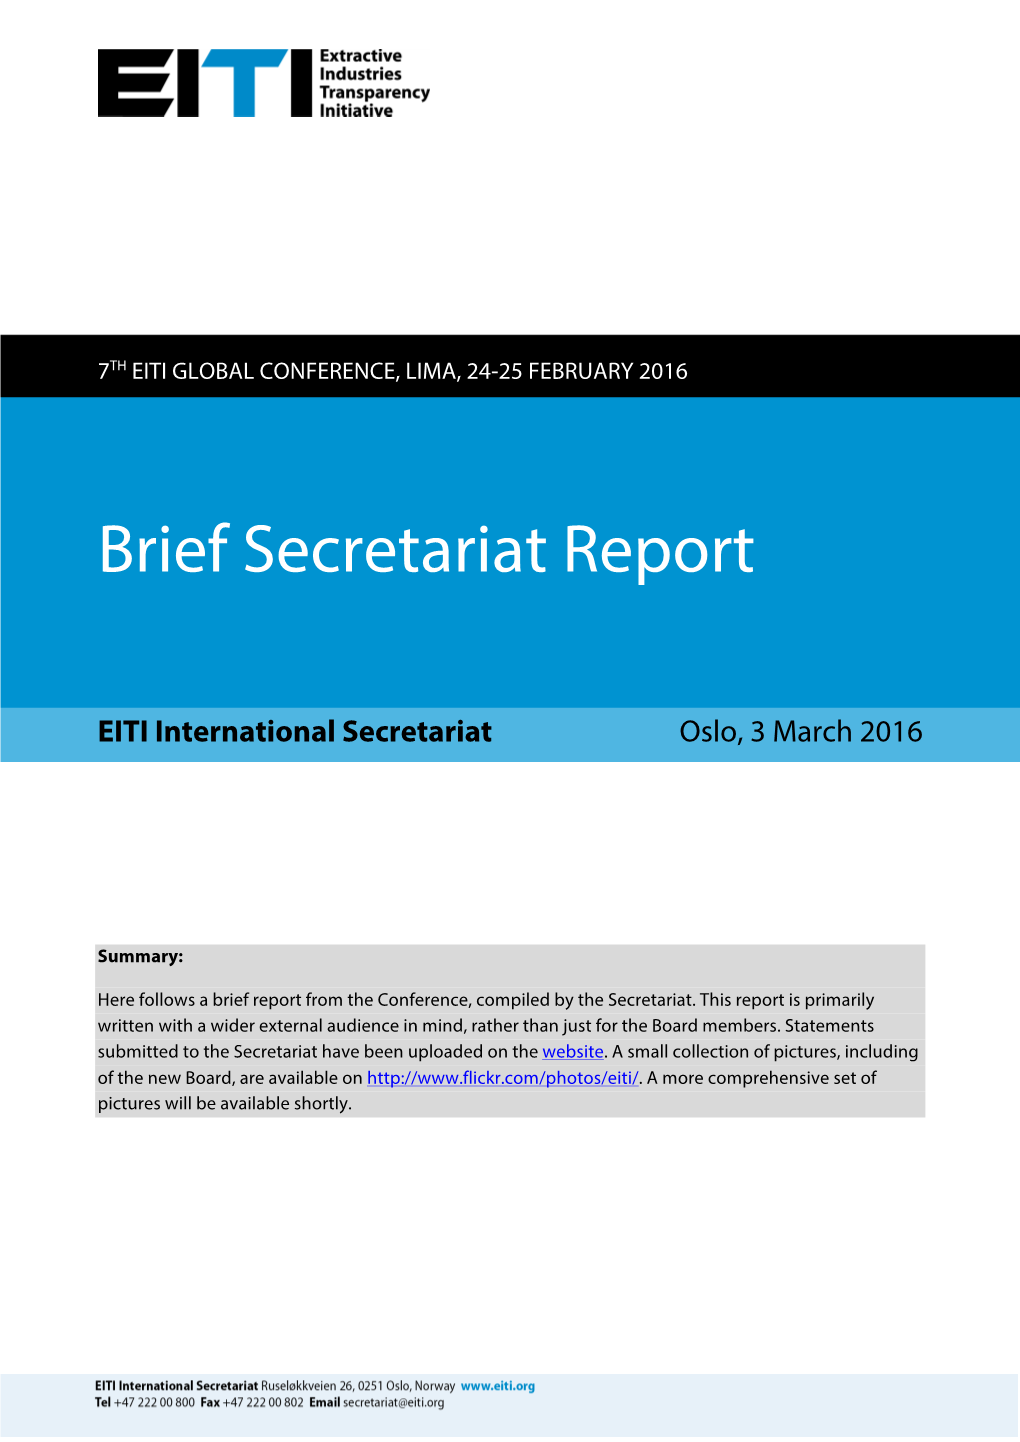 Brief Secretariat Report